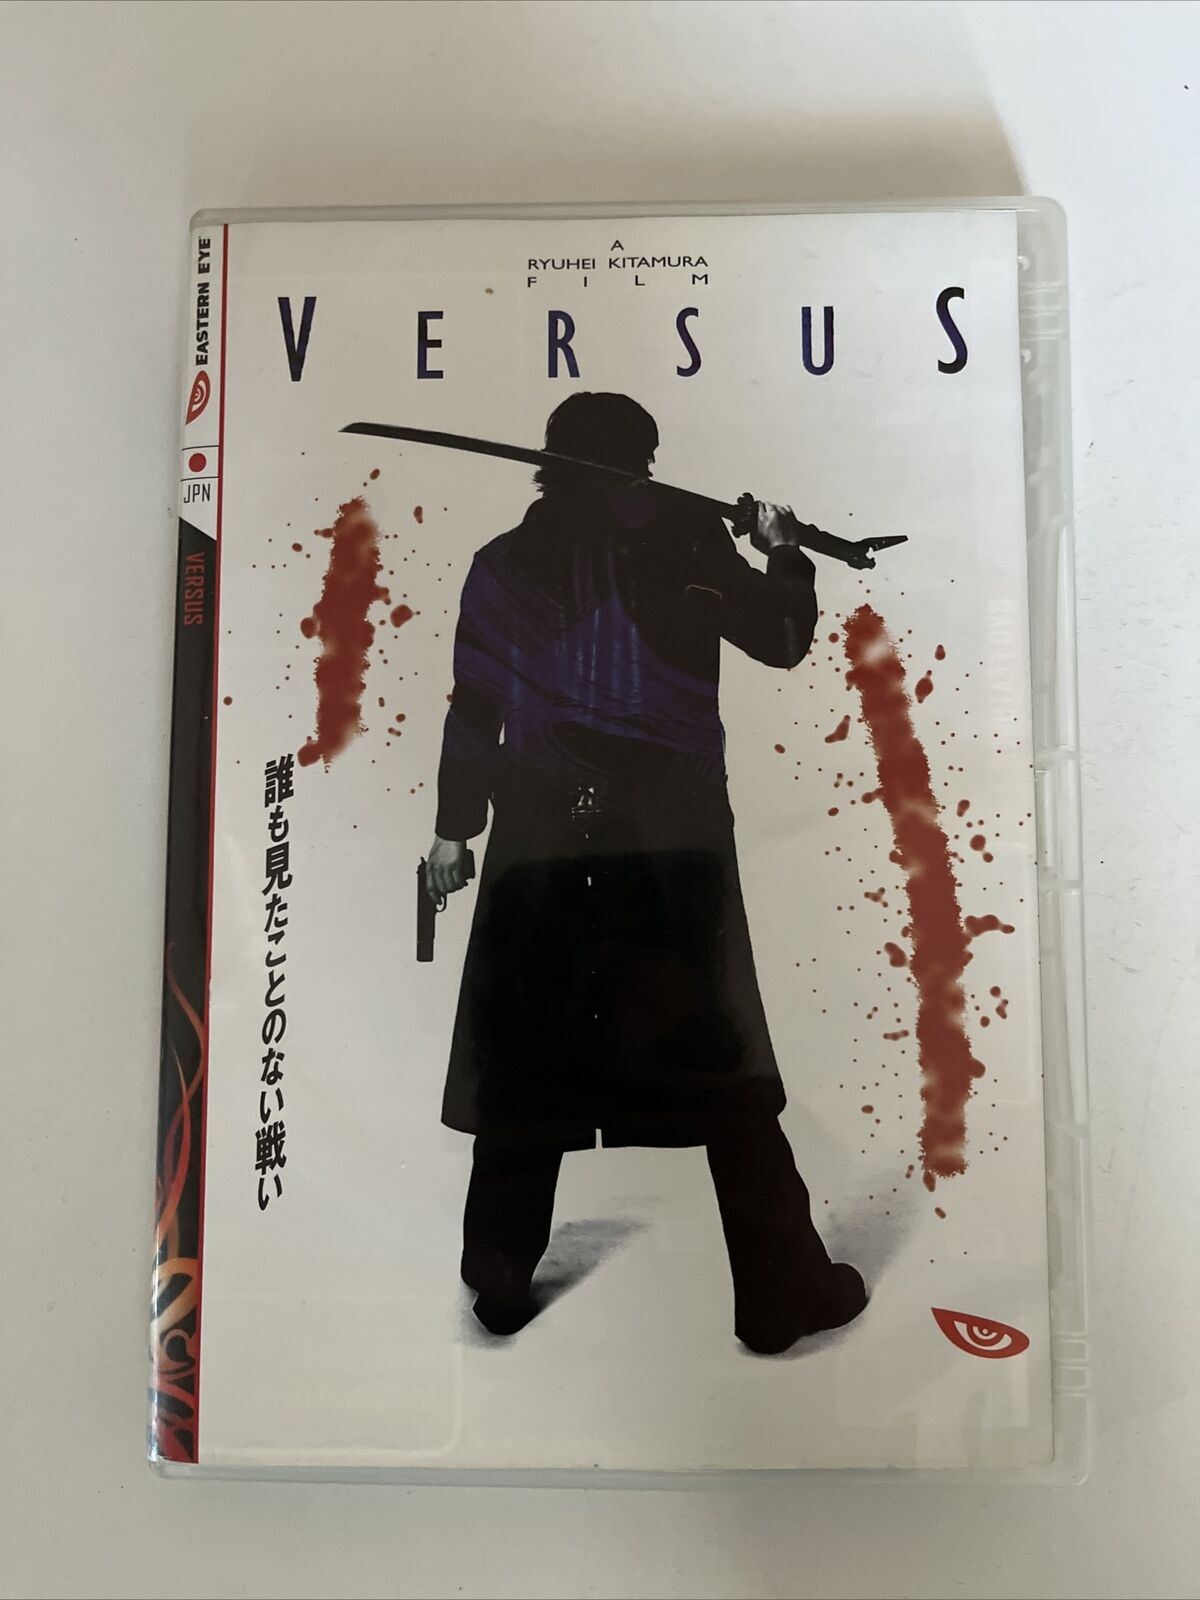 Versus (DVD, 2000) Ryûhei Kitamura Japanese Samurai Film. All Regions